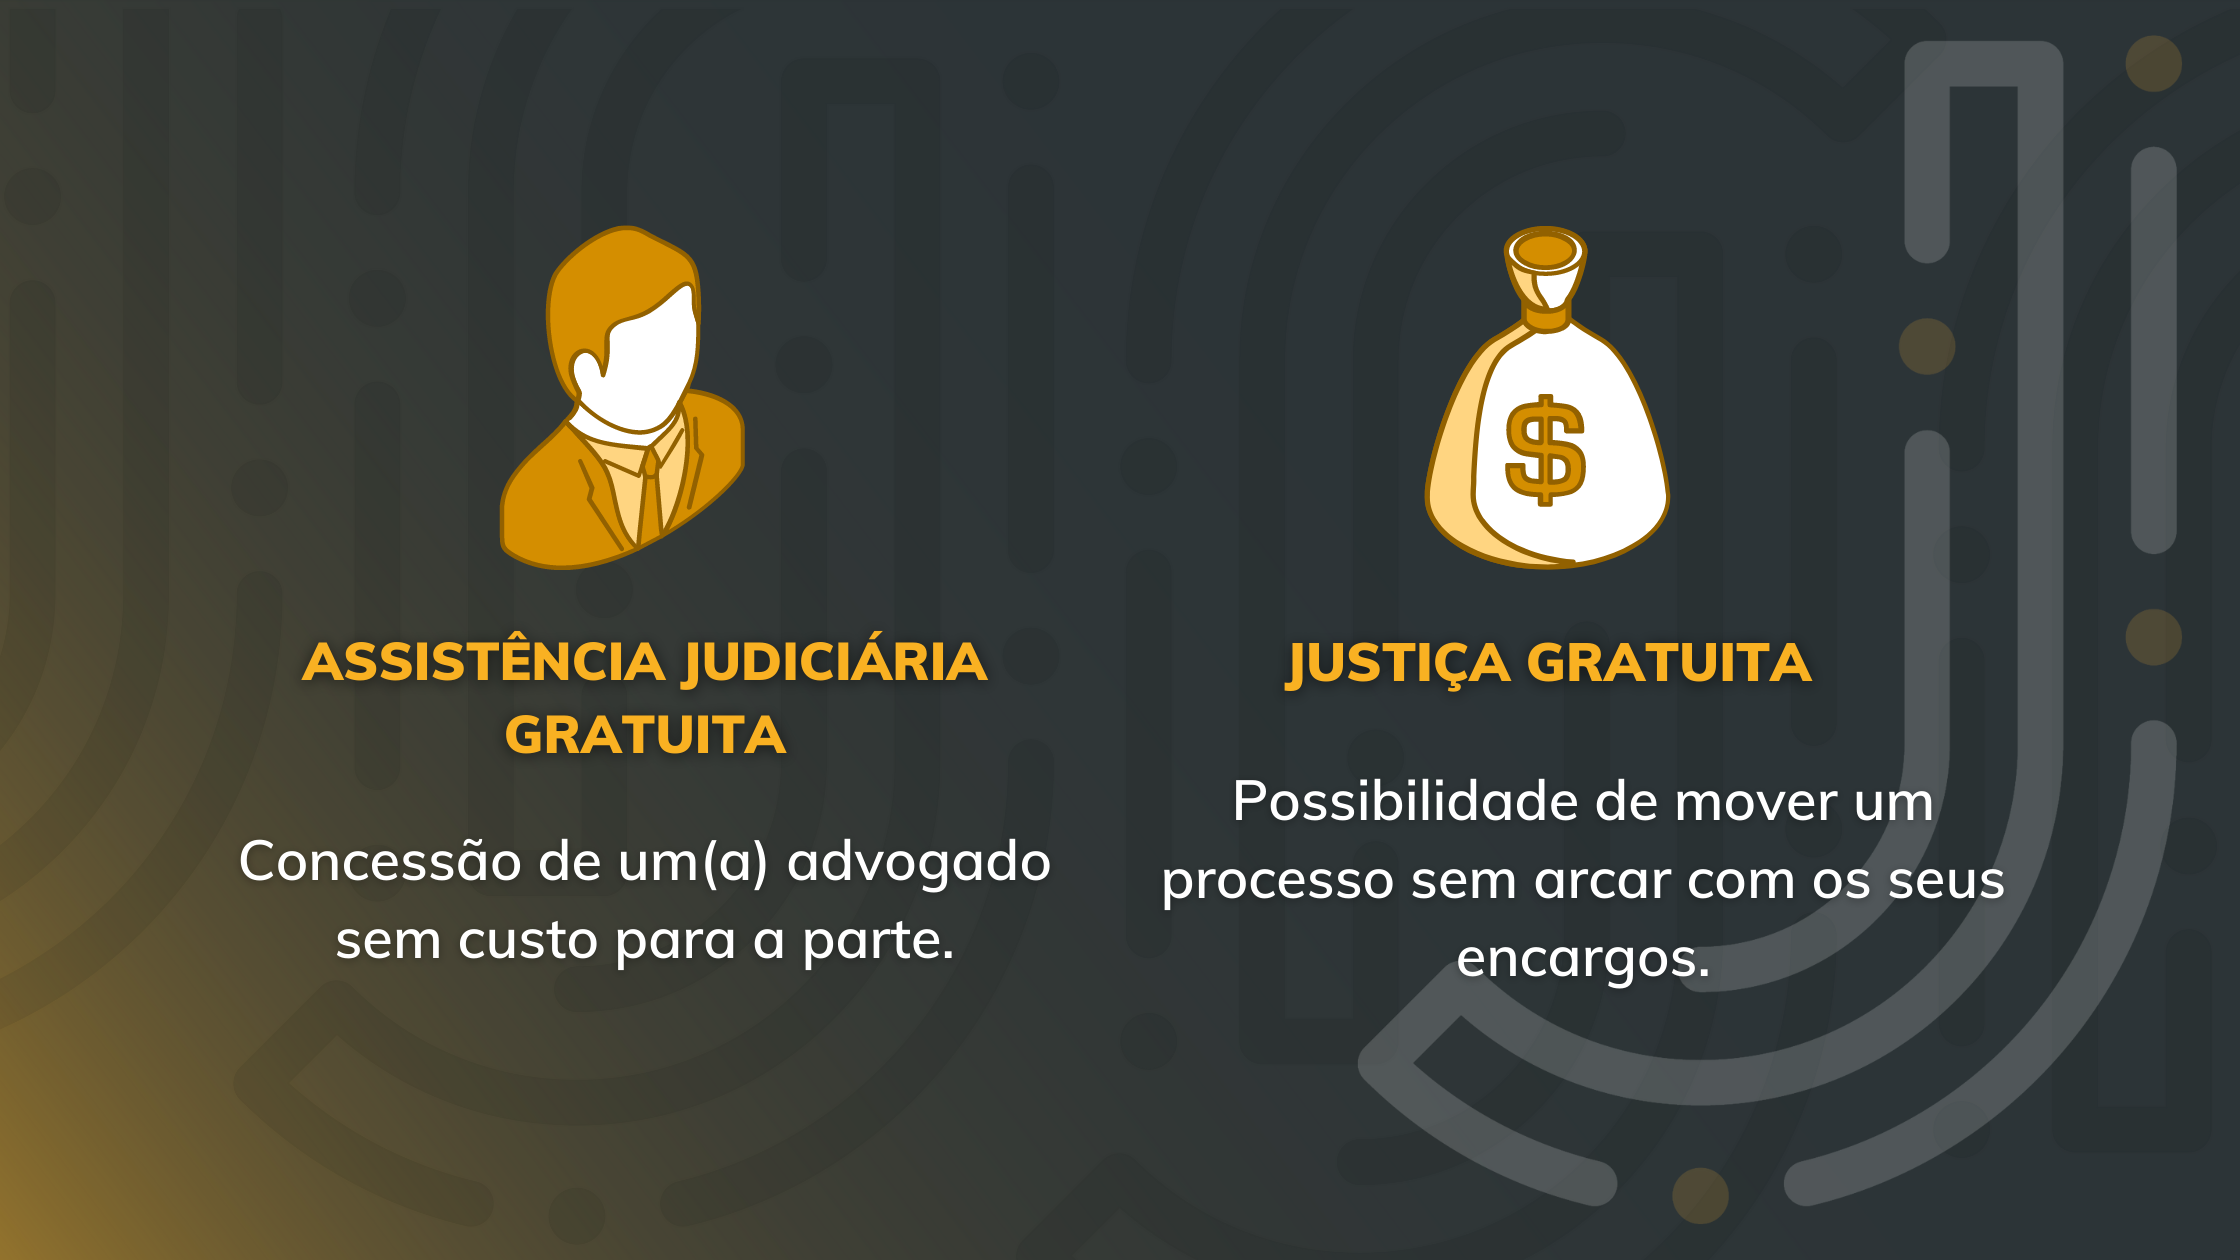 Diferença entre assistência judiciária gratuita e justiça gratuita